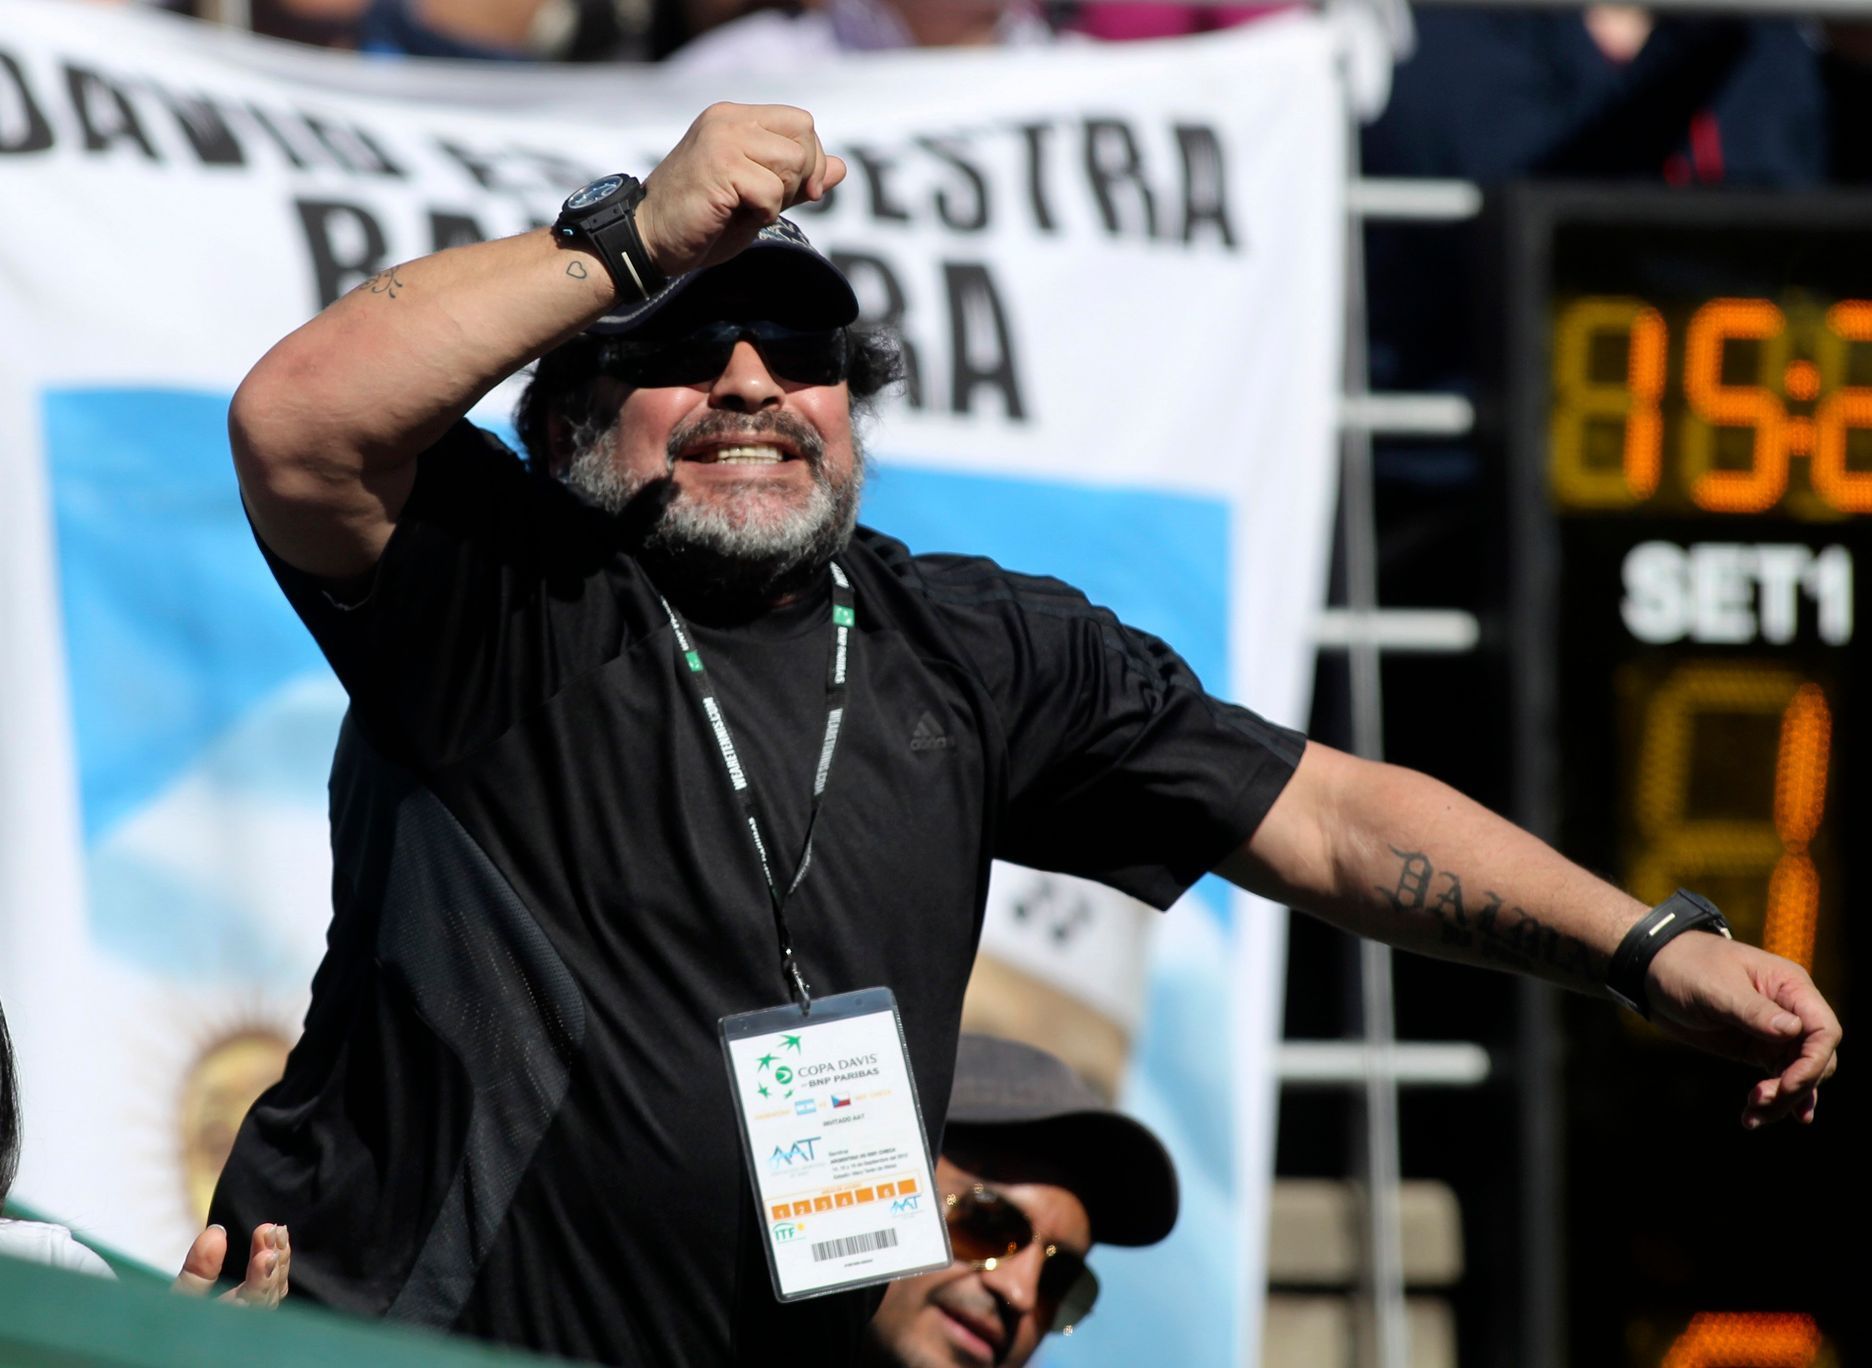 Argentinská fotbalová legenda Diego Maradona fandí Juanu Mónacovi v prvním semifinálovém utkání Davis Cupu 2012 s Čechem Tomášem Berdychem.